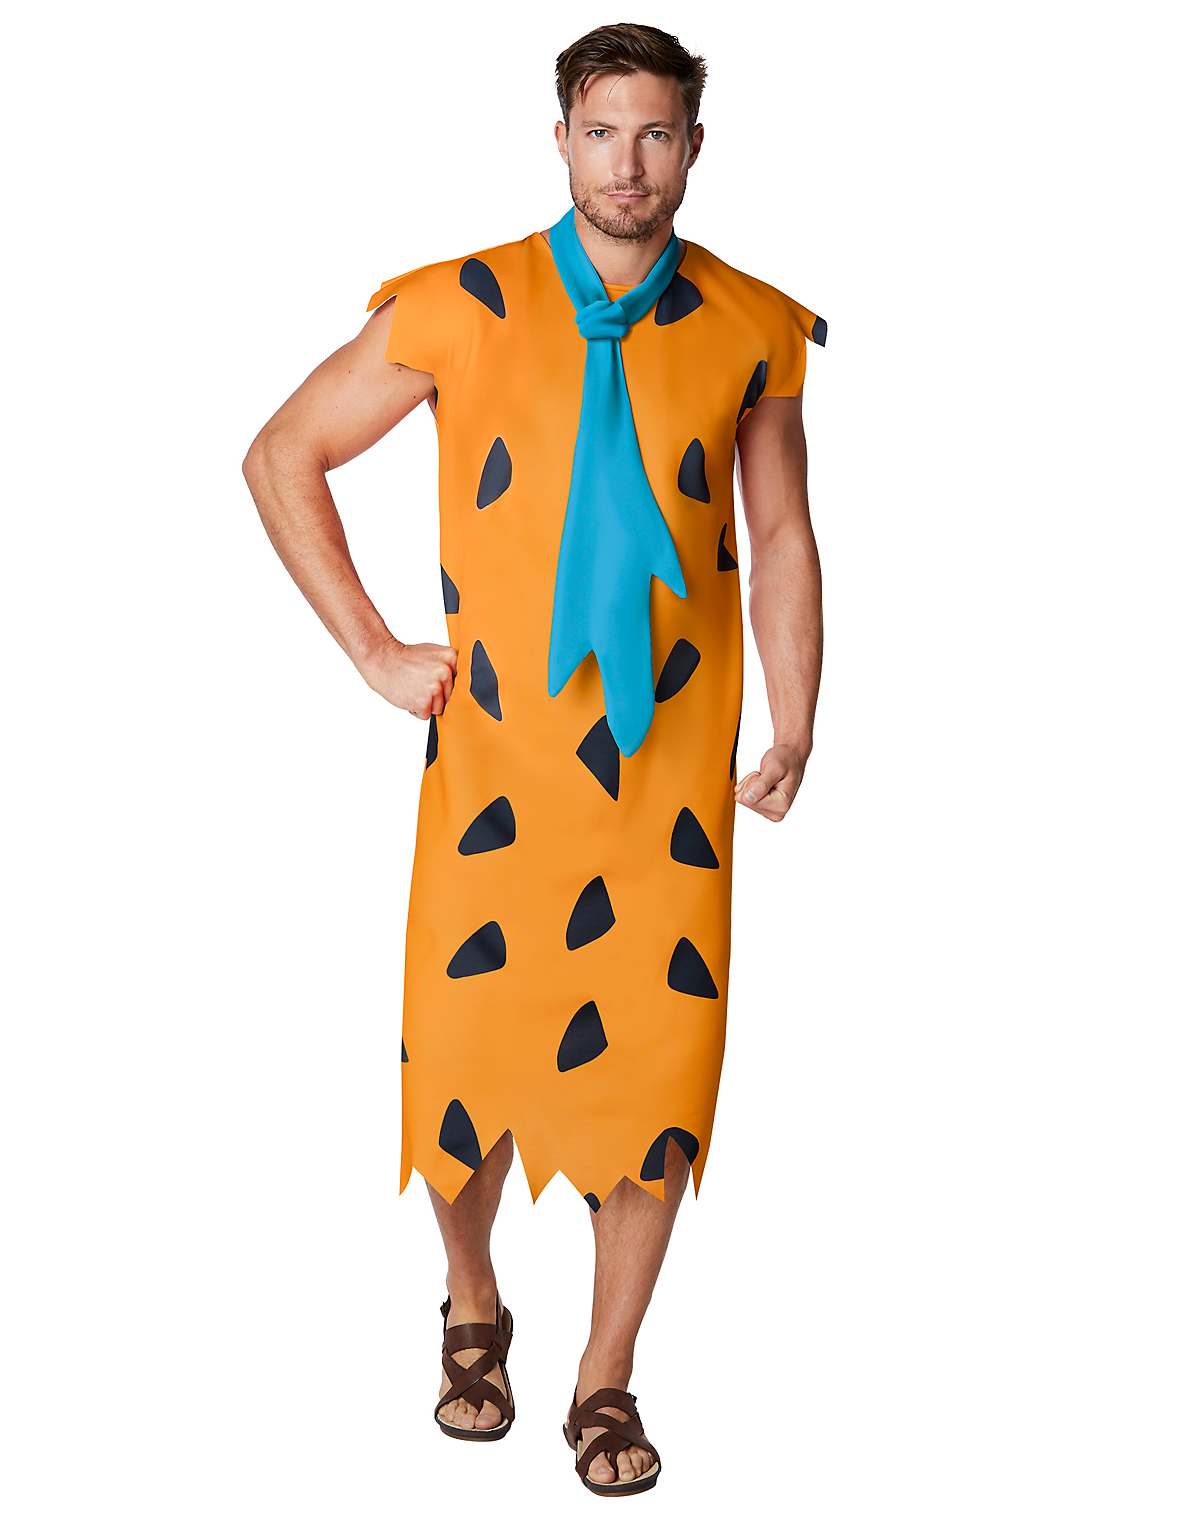 Fred Flintstone plus size costume